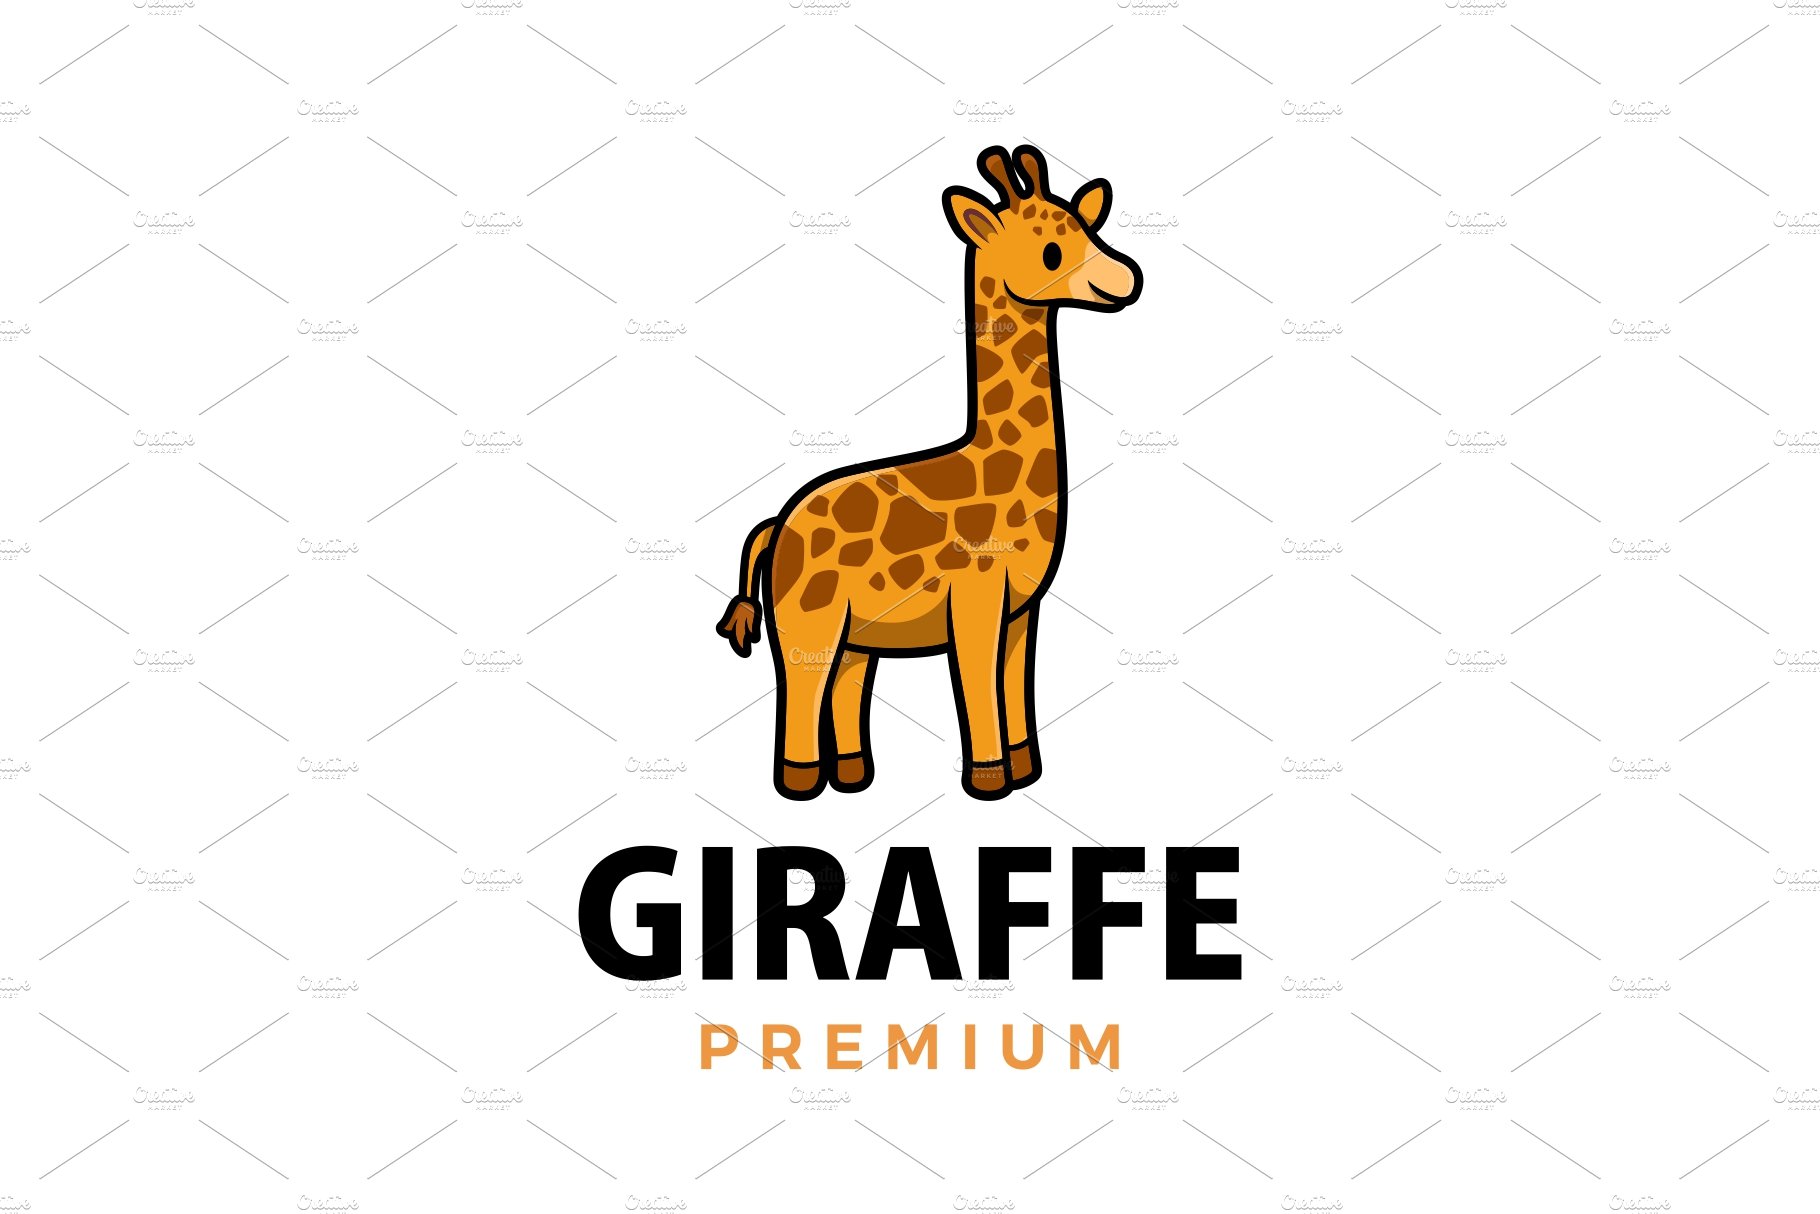 cute giraffe cartoon logo vector cover image.